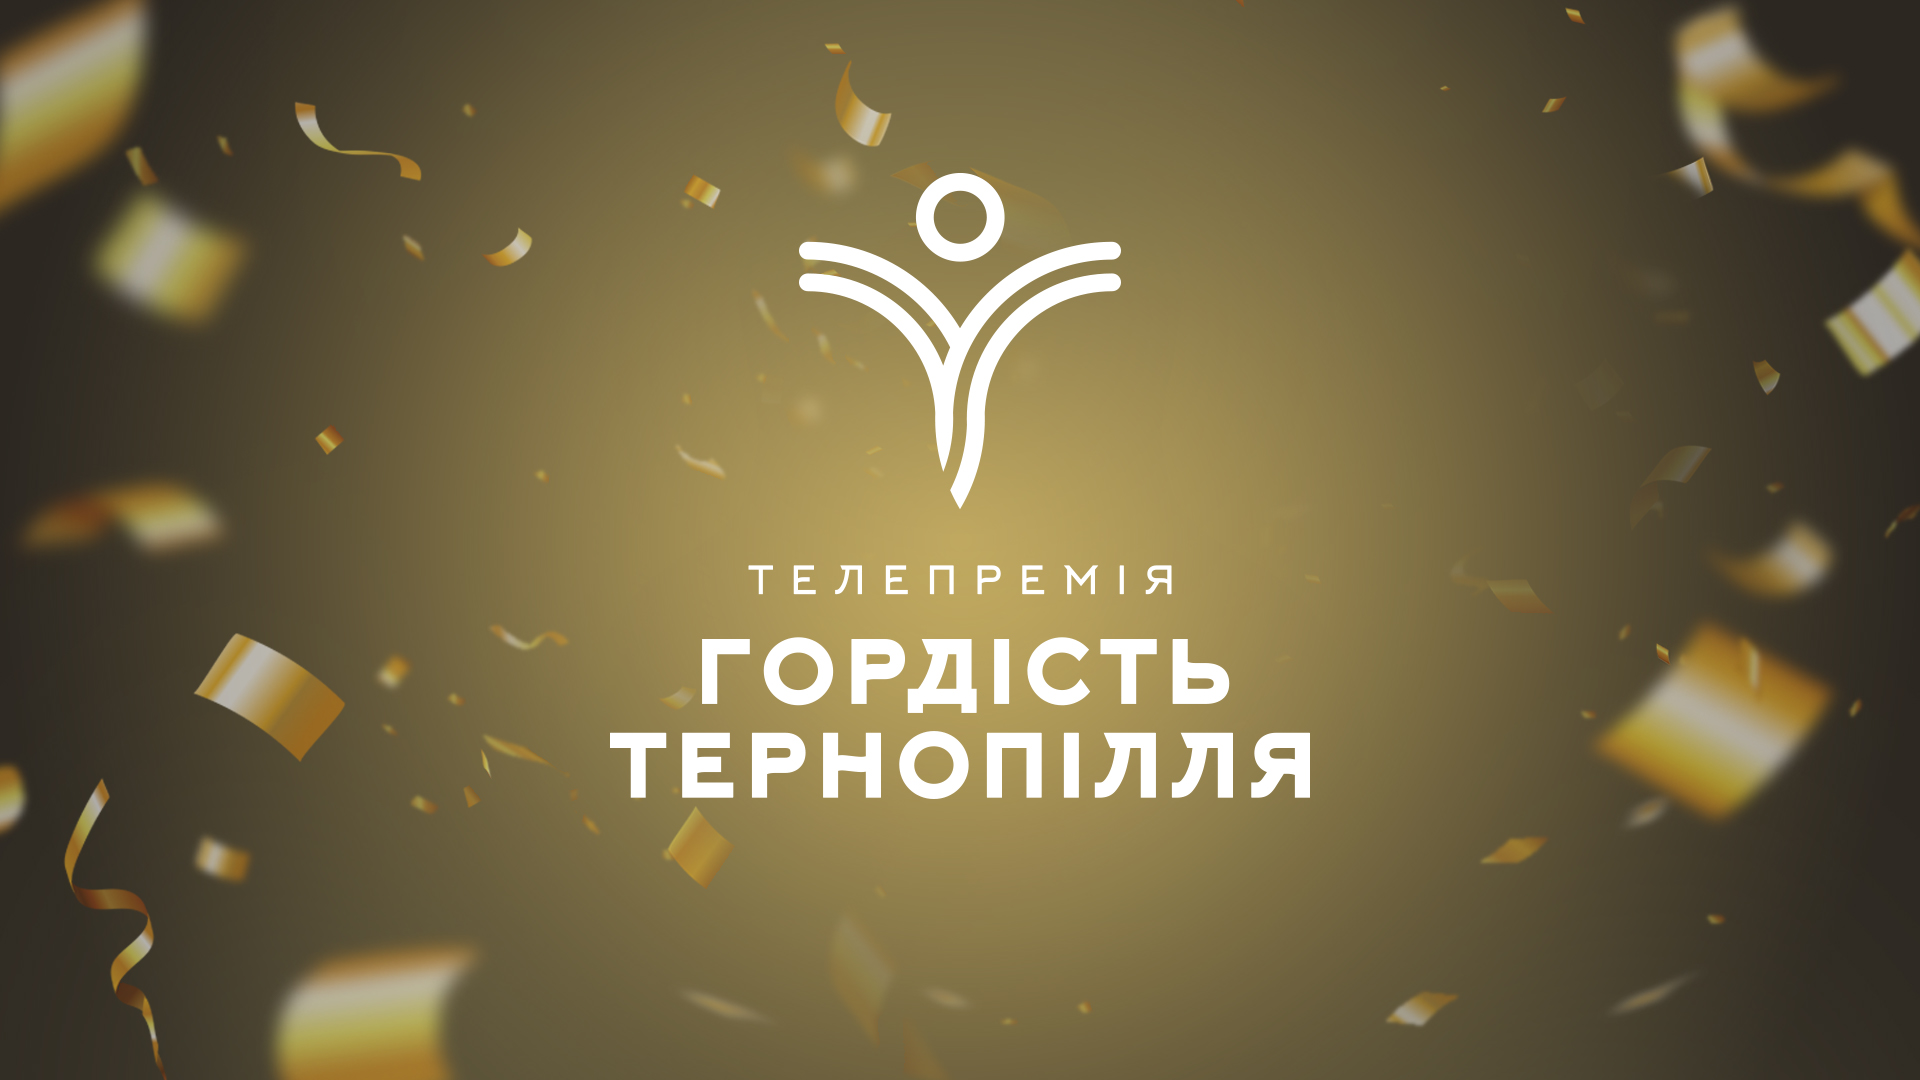 Від сьогодні стартує висунення номінантів на телевізійну премію «Гордість Тернопілля» 2021!